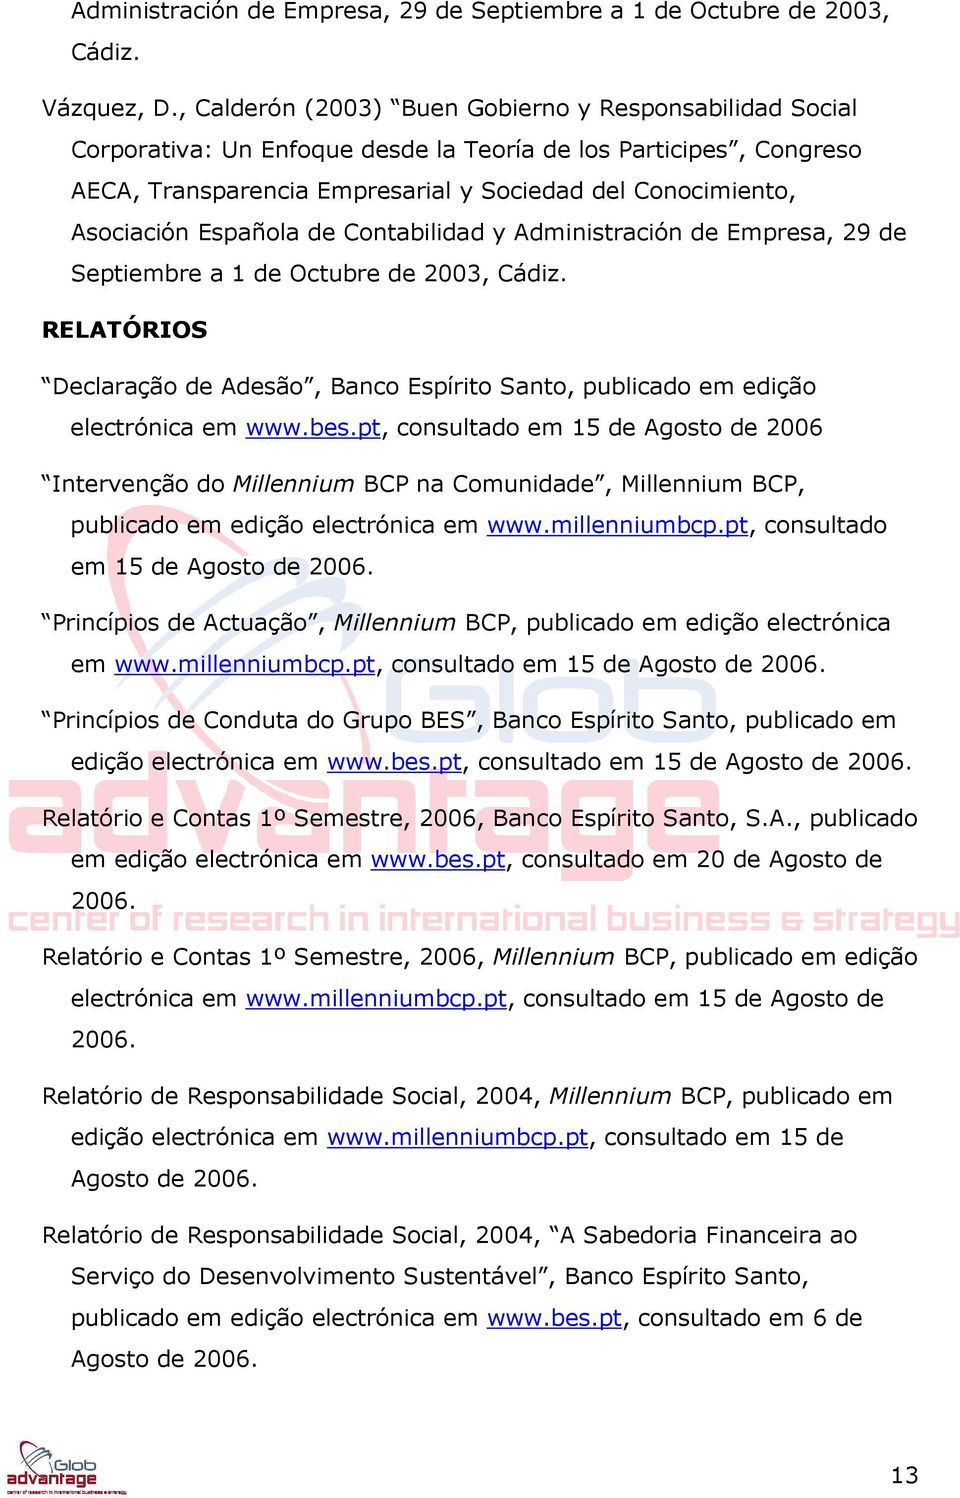 Española de Contabilidad y Administración de Empresa, 29 de Septiembre a 1 de Octubre de 2003, Cádiz. RELATÓRIOS Declaração de Adesão, Banco Espírito Santo, publicado em edição electrónica em www.bes.